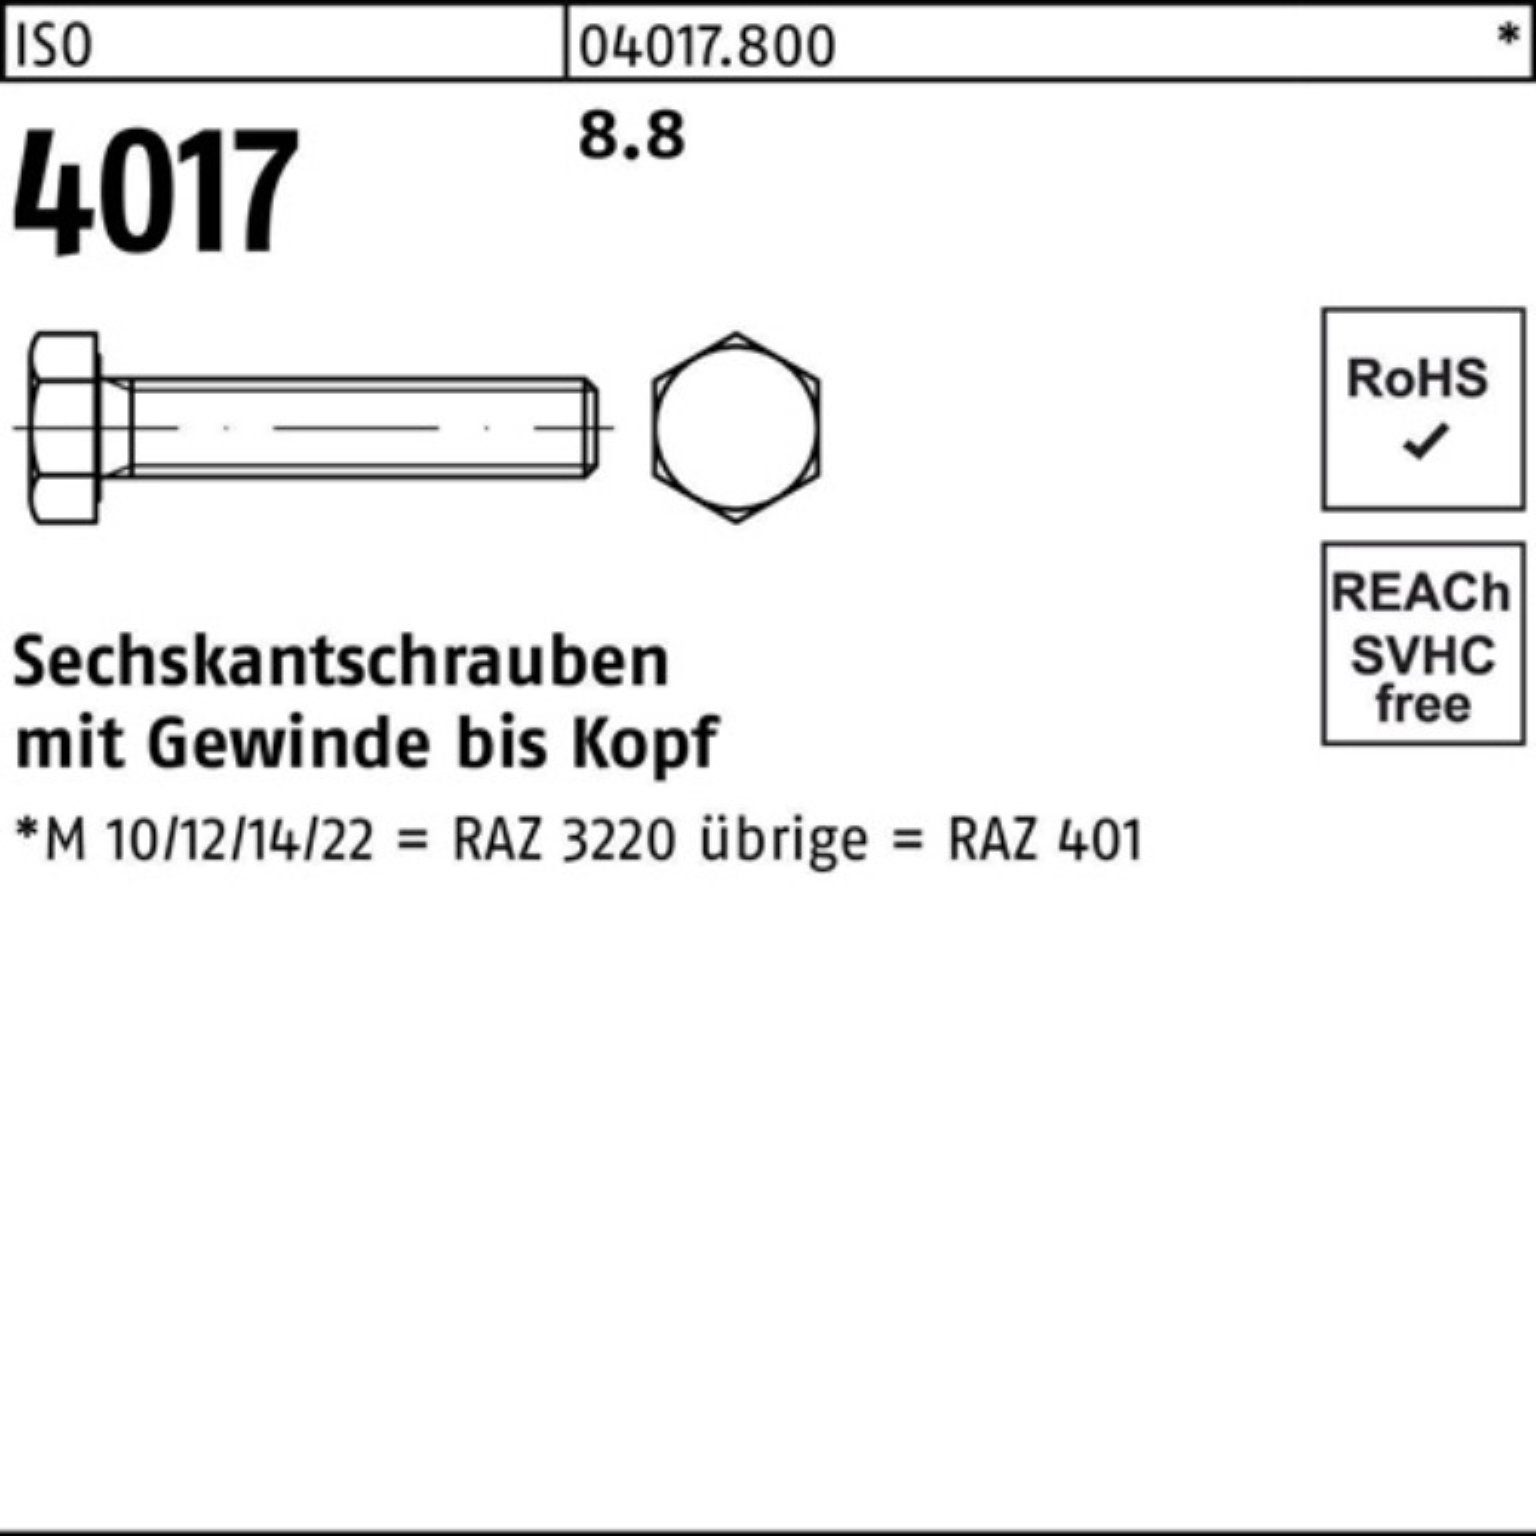 Bufab Sechskantschraube 4017 8.8 4017 ISO 1 Stück 100er ISO VG M42x Pack Sechskantschraube 80